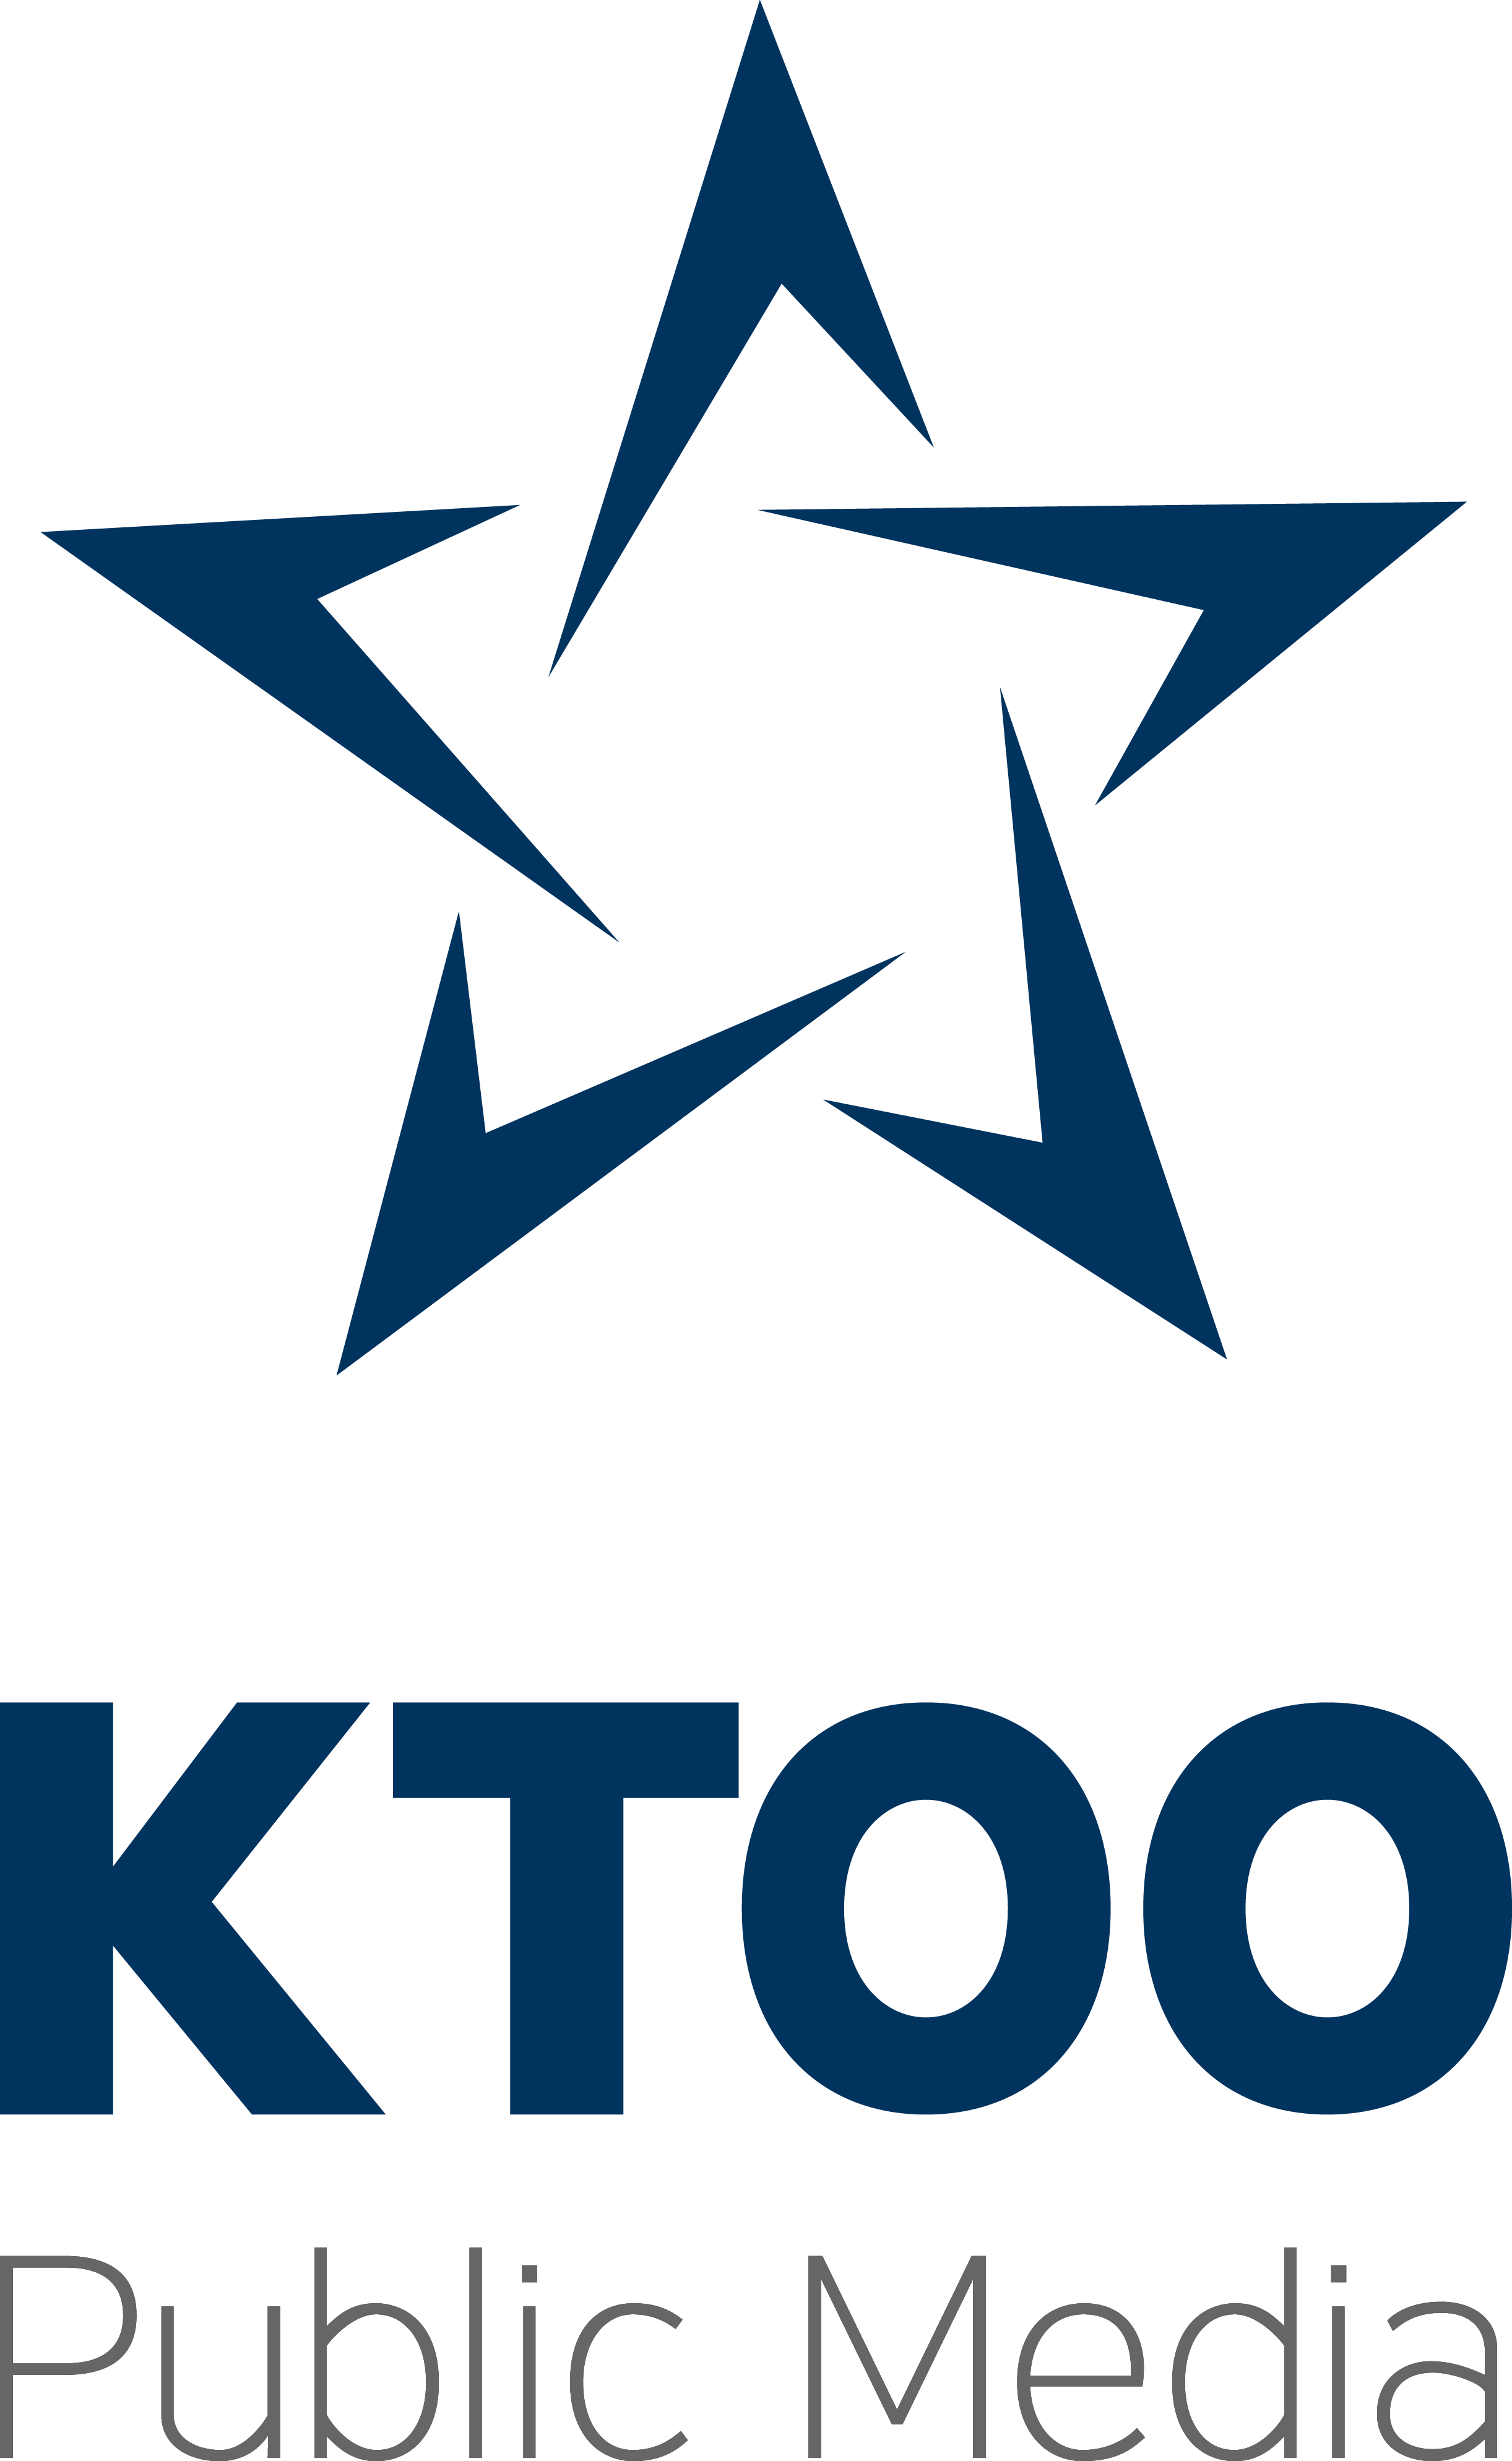 KTOO Public Media (logo)